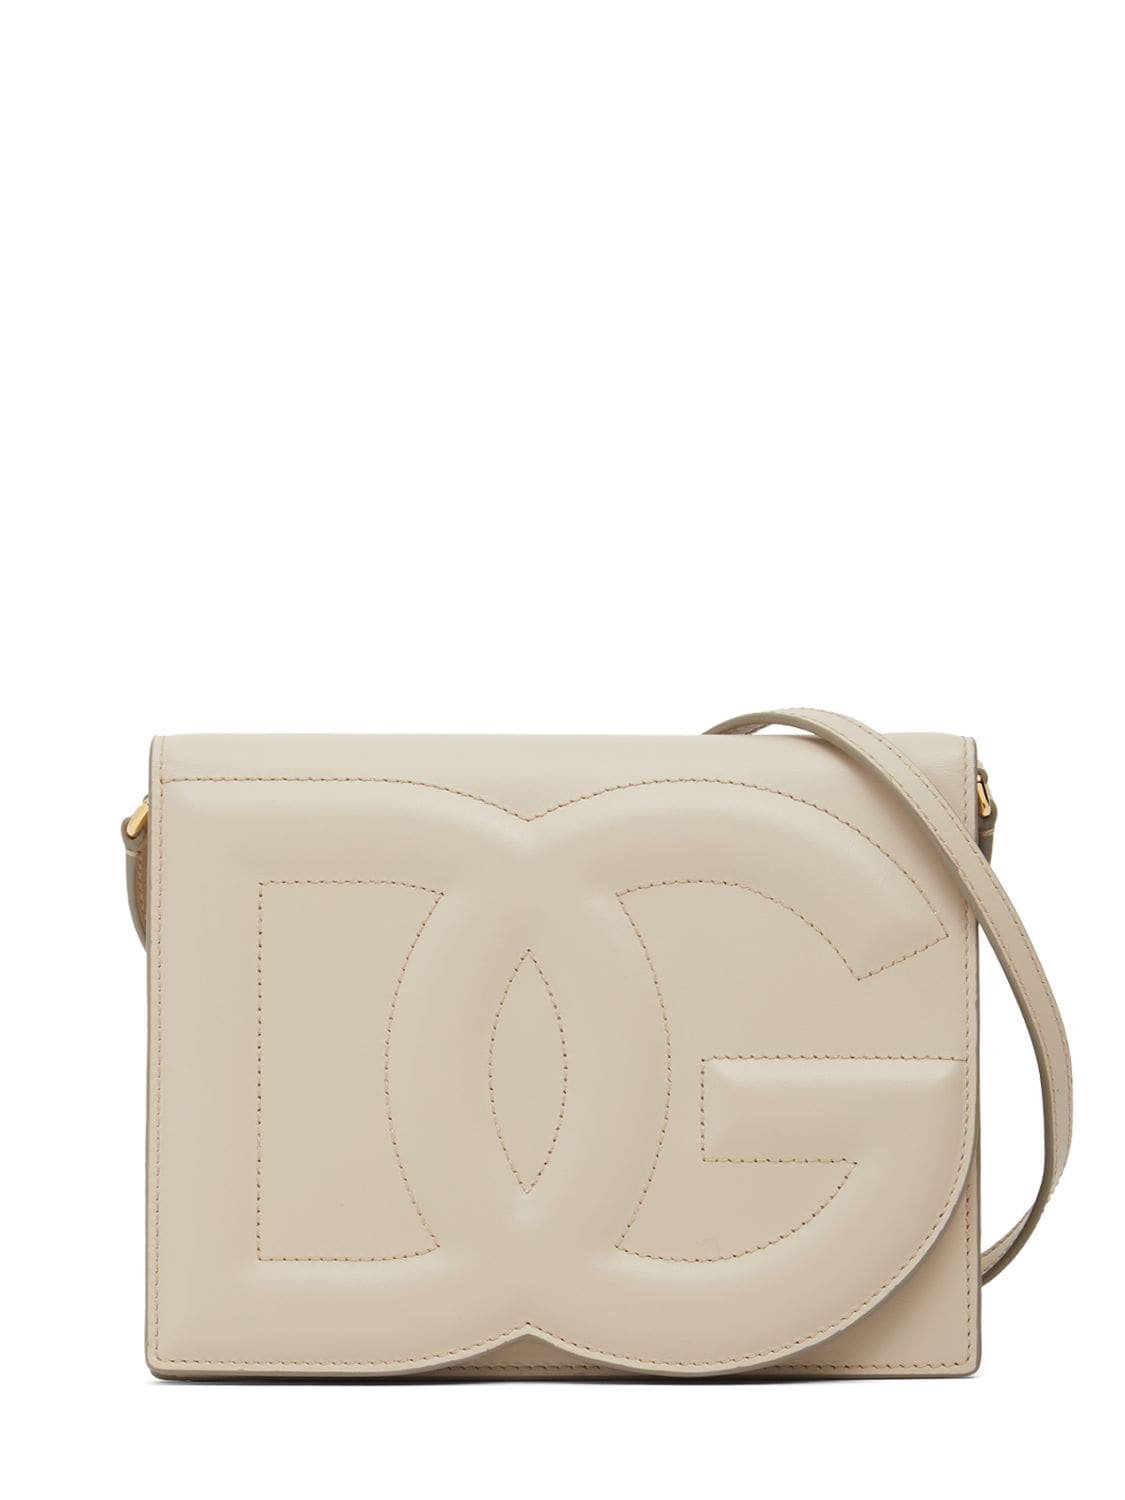 Dolce & Gabbana Logo Leather Shoulder Bag In Ivory